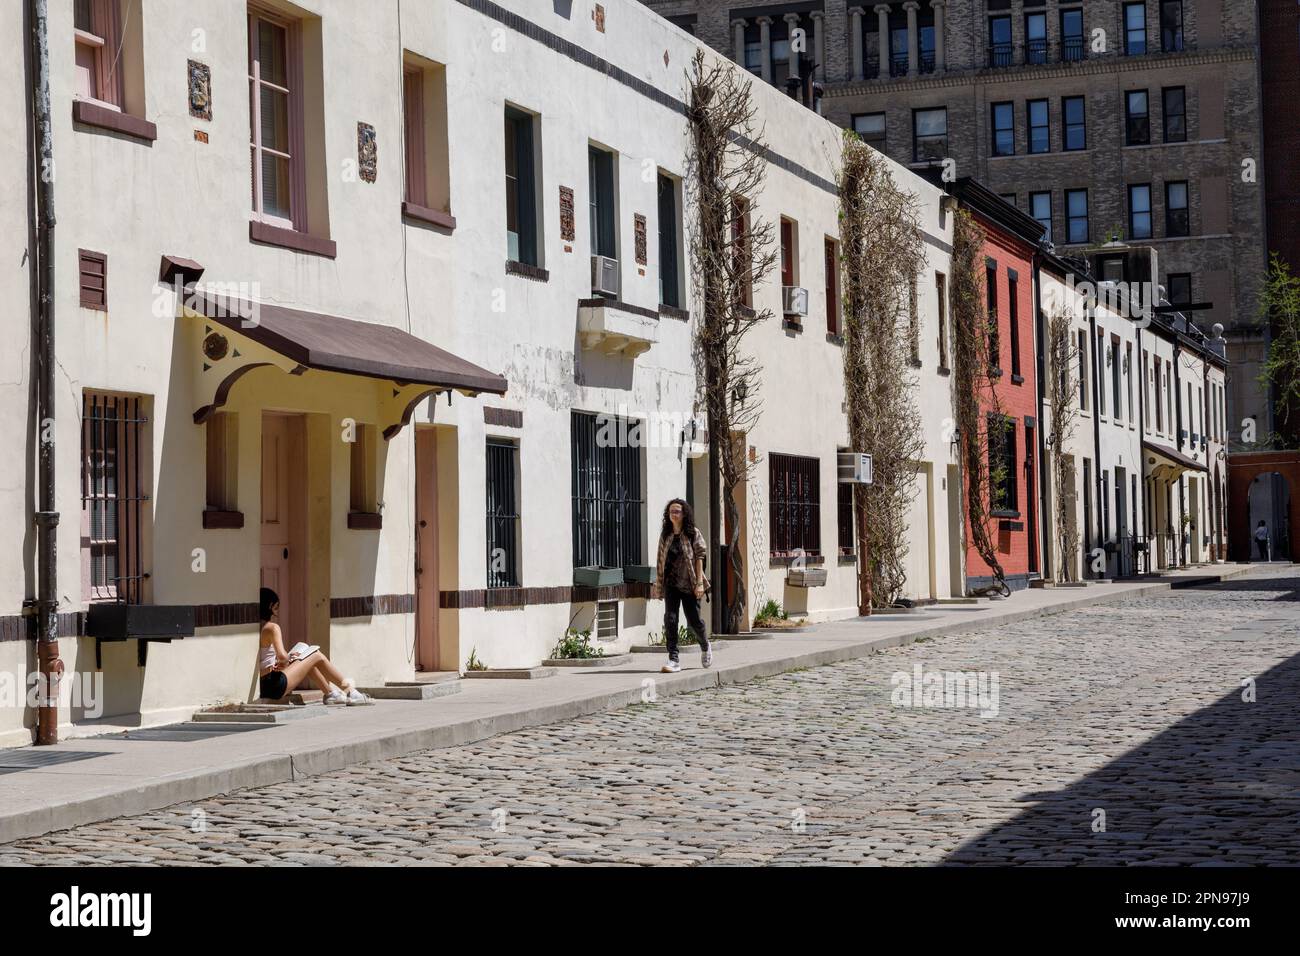 Washington Mews, rue pavée historique près de Washington Square, Greenwich Village, New York City Banque D'Images